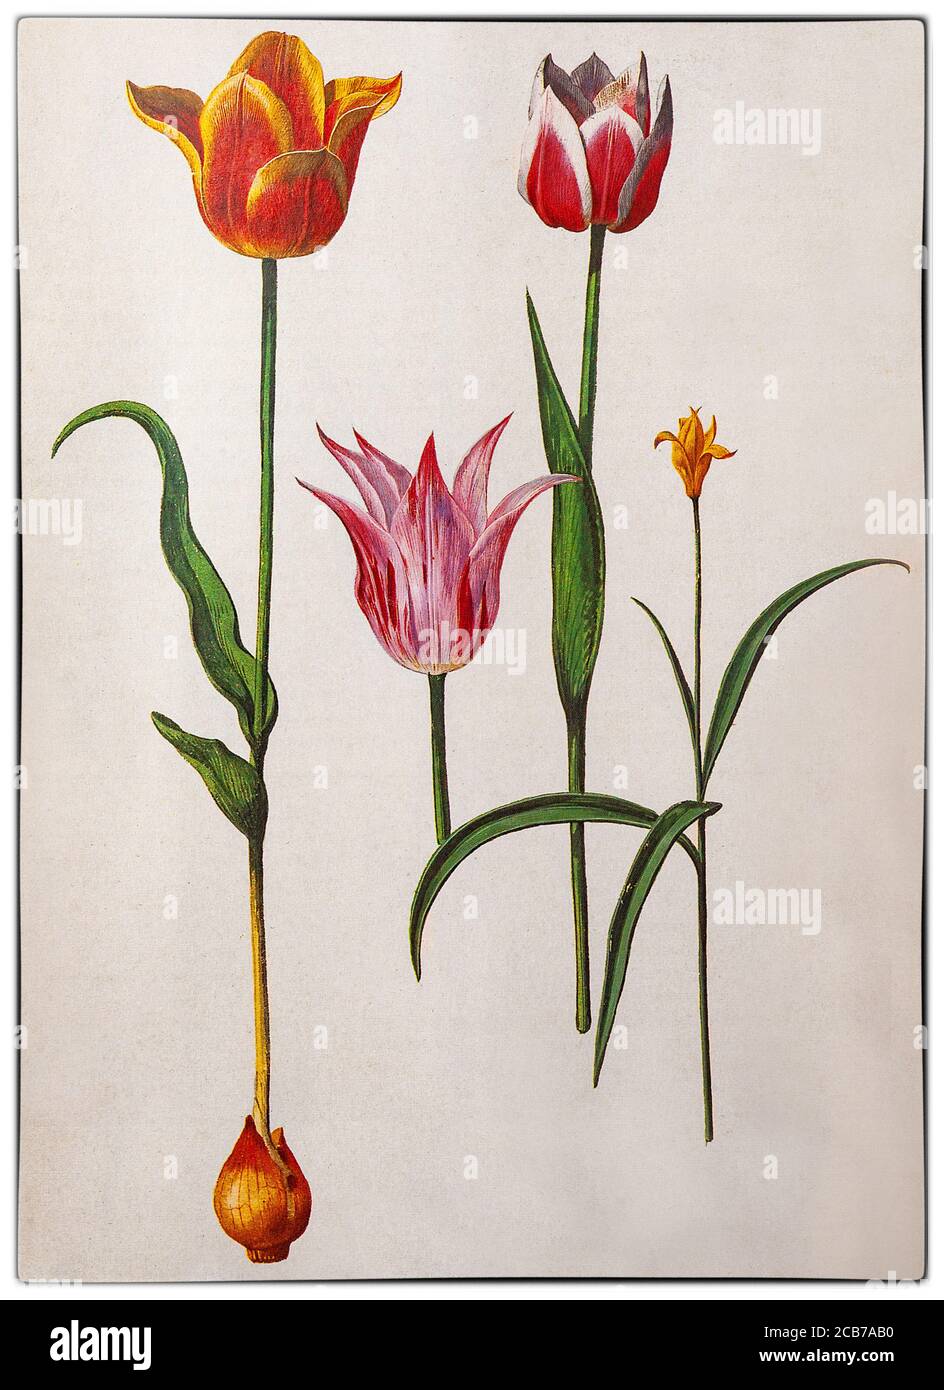 Tulipes hollandaises de Pieter van Kouwenhoorn aka Pieter Kouwenhoorn (1599-1654), illustrateur botanique néerlandais, travaillant à Haarlem et Leiden aux pays-Bas pendant la manie des tulipes à l'âge d'or néerlandais. Au cours de cette période, les prix contractuels de certaines ampoules de la tulipe récemment introduite et à la mode ont atteint des niveaux extraordinairement élevés, puis se sont effondrés de façon spectaculaire. Banque D'Images